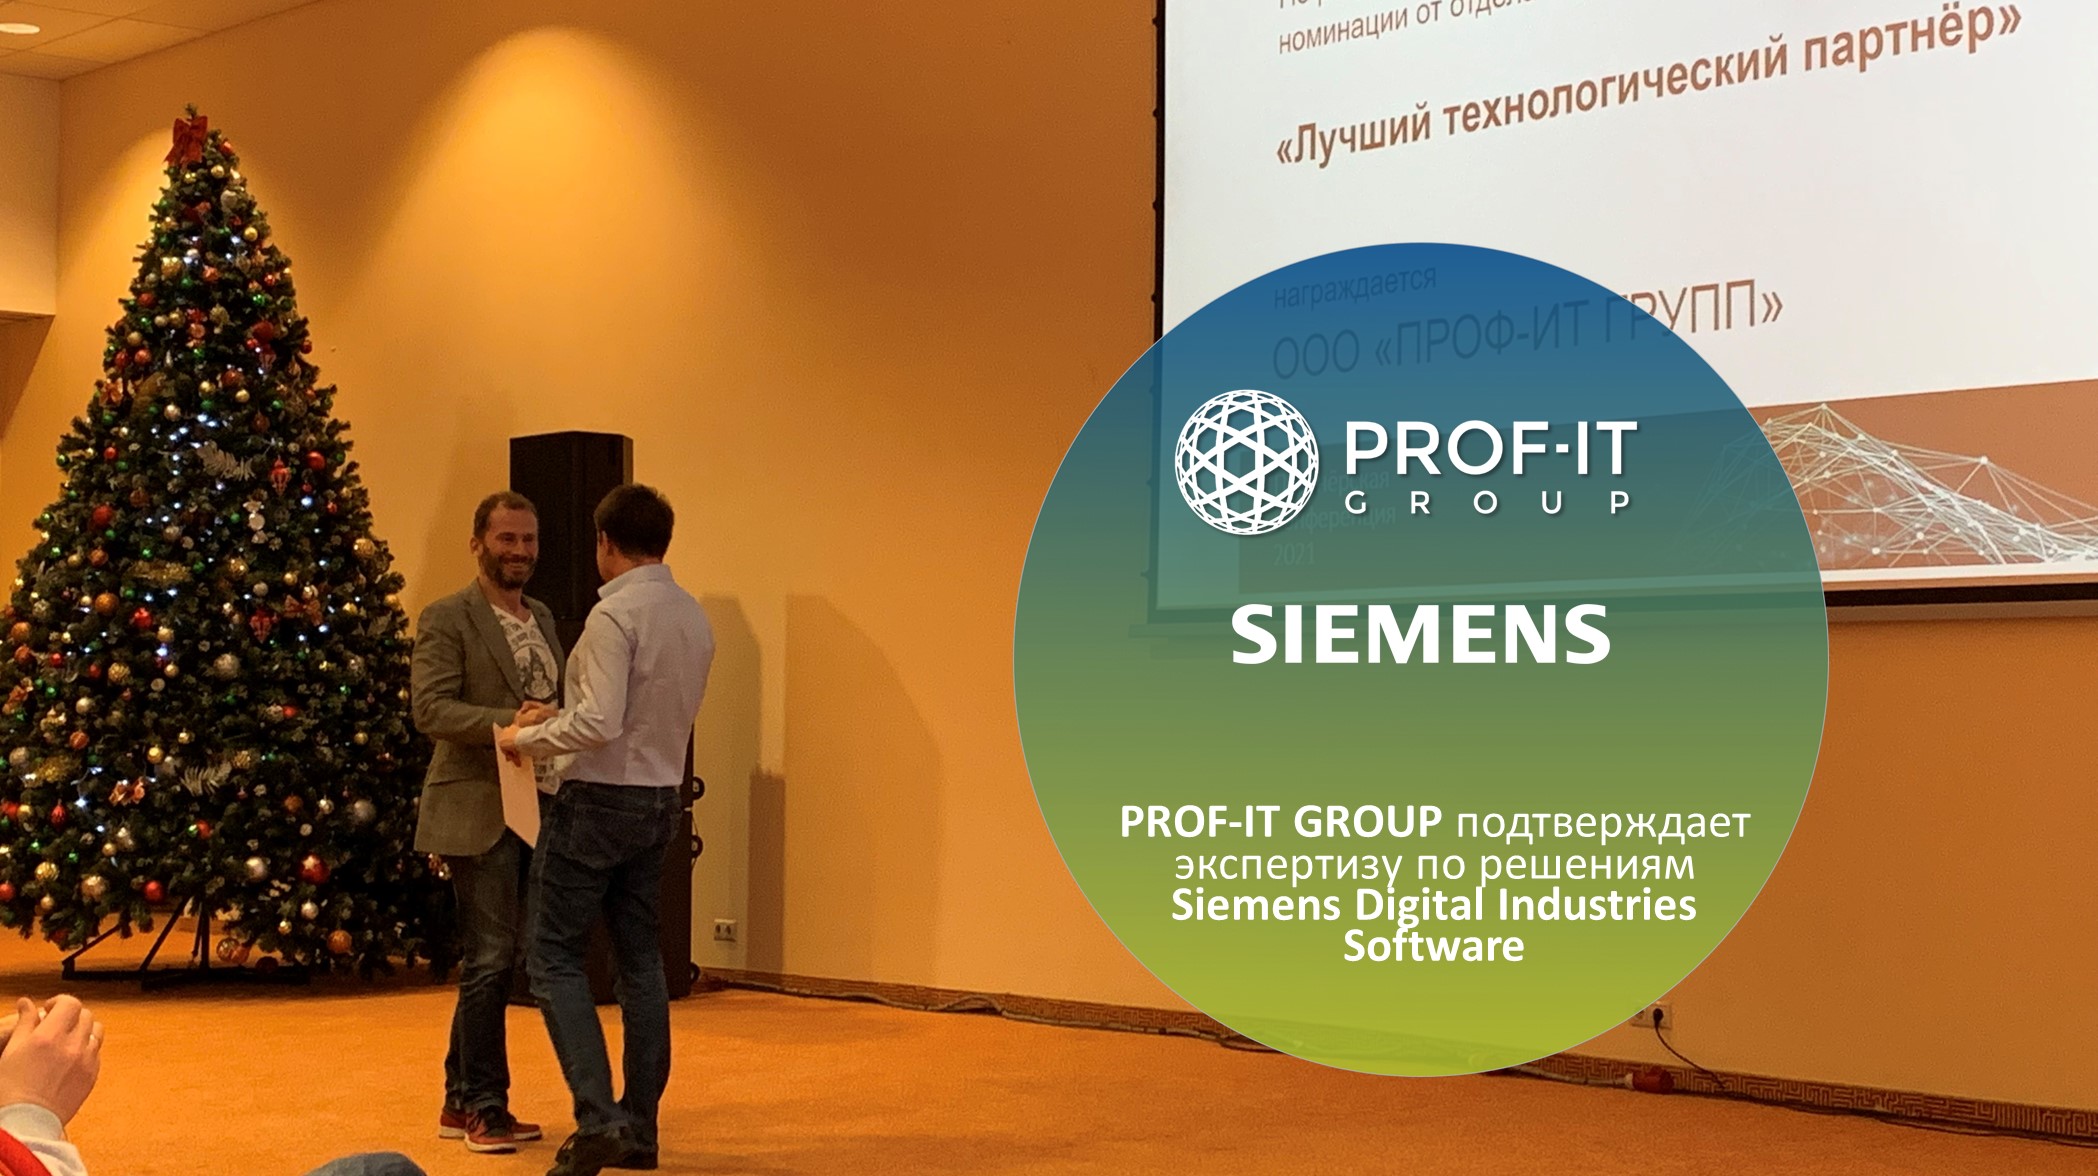 PROF-IT GROUP подтверждает экспертизу по решениям Siemens Digital Industries Software